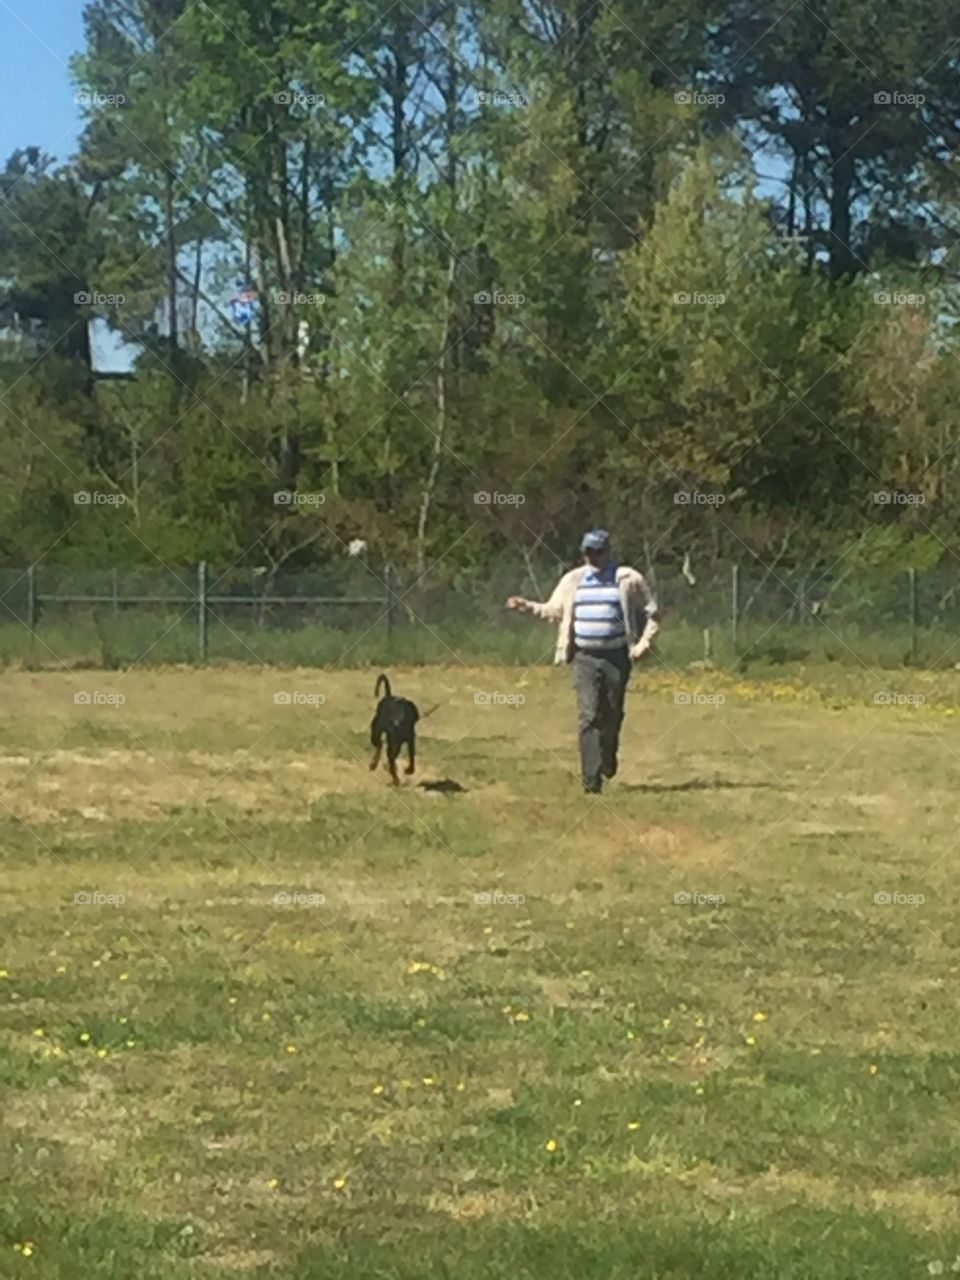 Dad running the dog, Sirius.